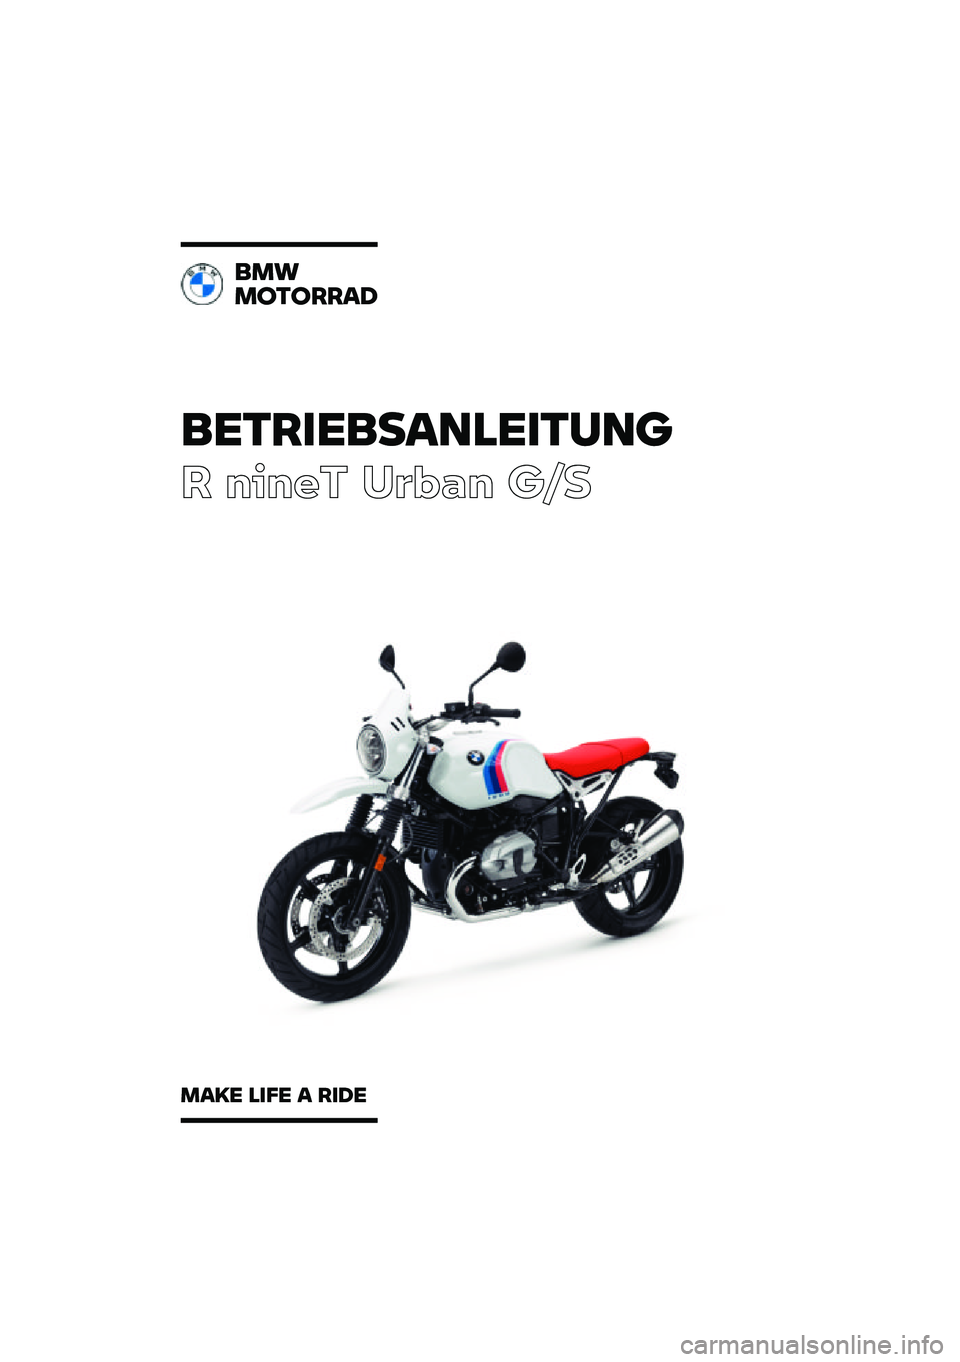 BMW MOTORRAD R NINE T URVAN G/S 2021  Betriebsanleitung (in German) ���������\b�	�
�����	�\f
� ����� ��\b�	�
� ��\f�
��
�
�
������\b�
�
�\b�� �
��� �\b ���� 